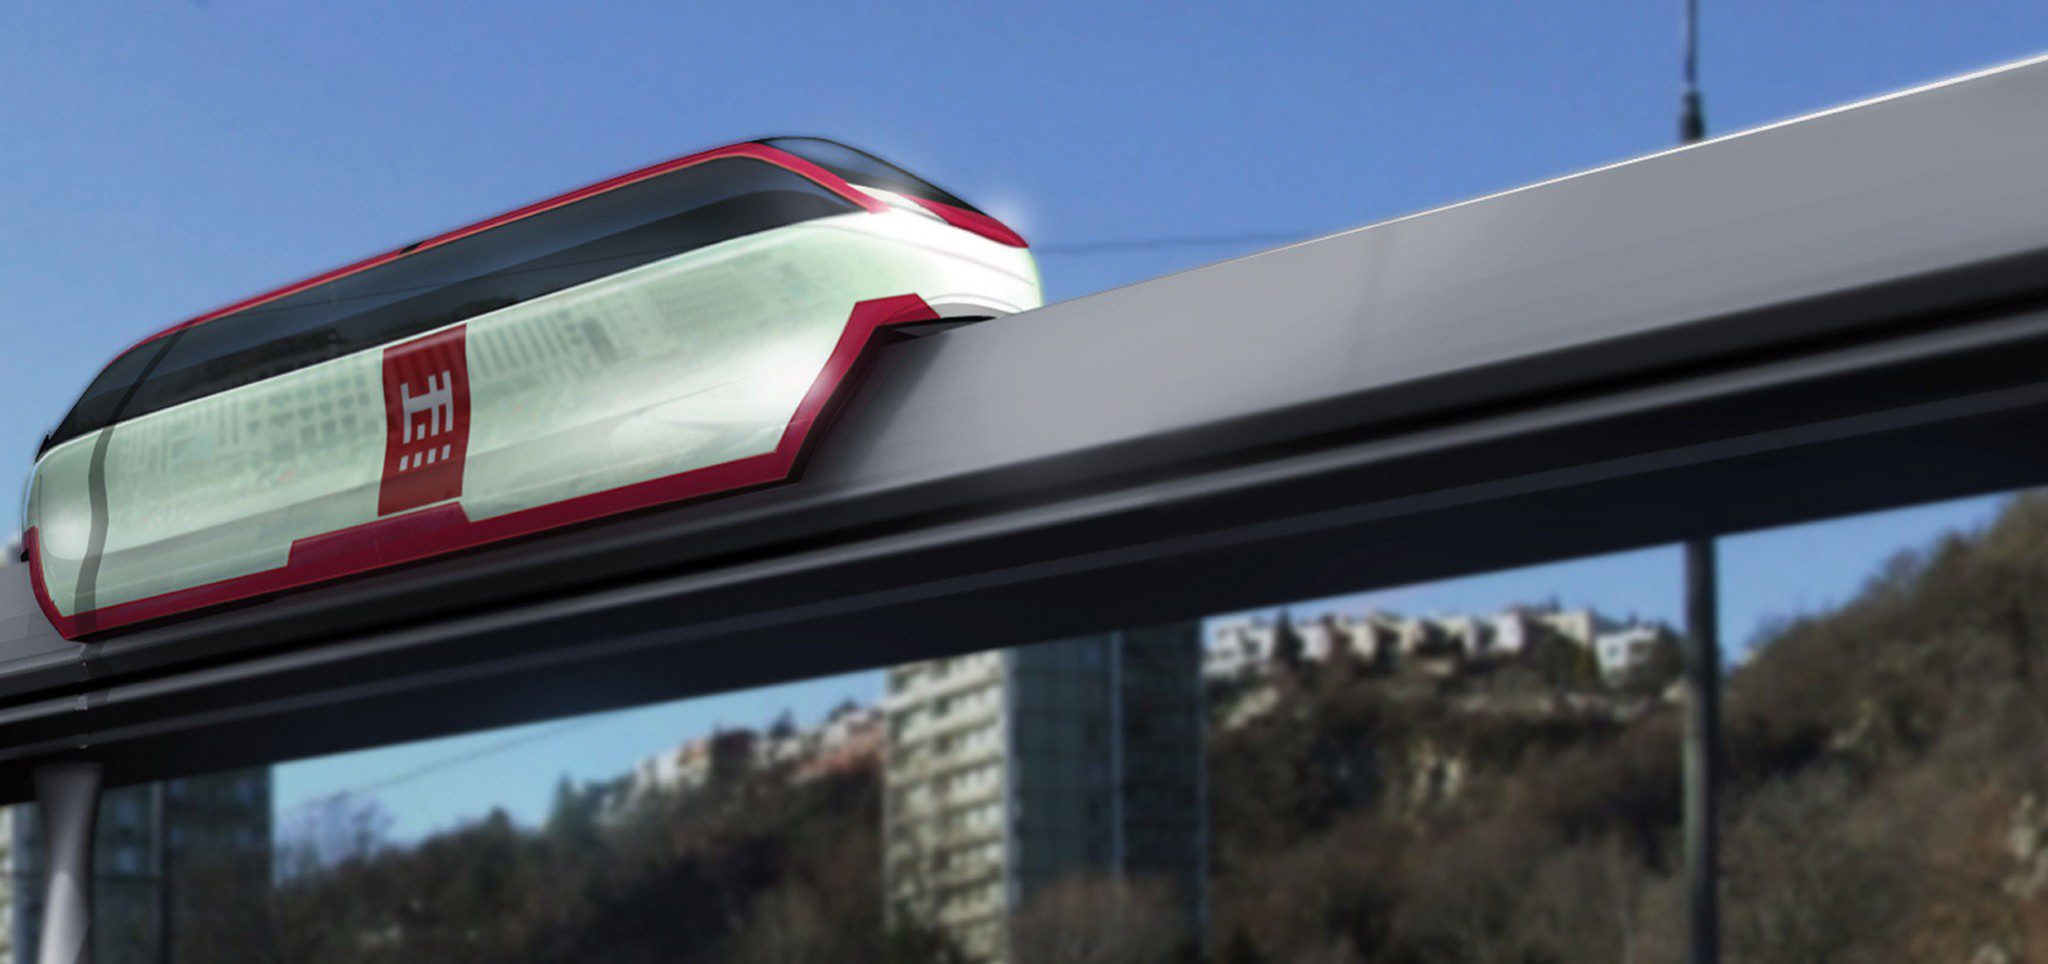 Продуктовые визуализации - Metrail